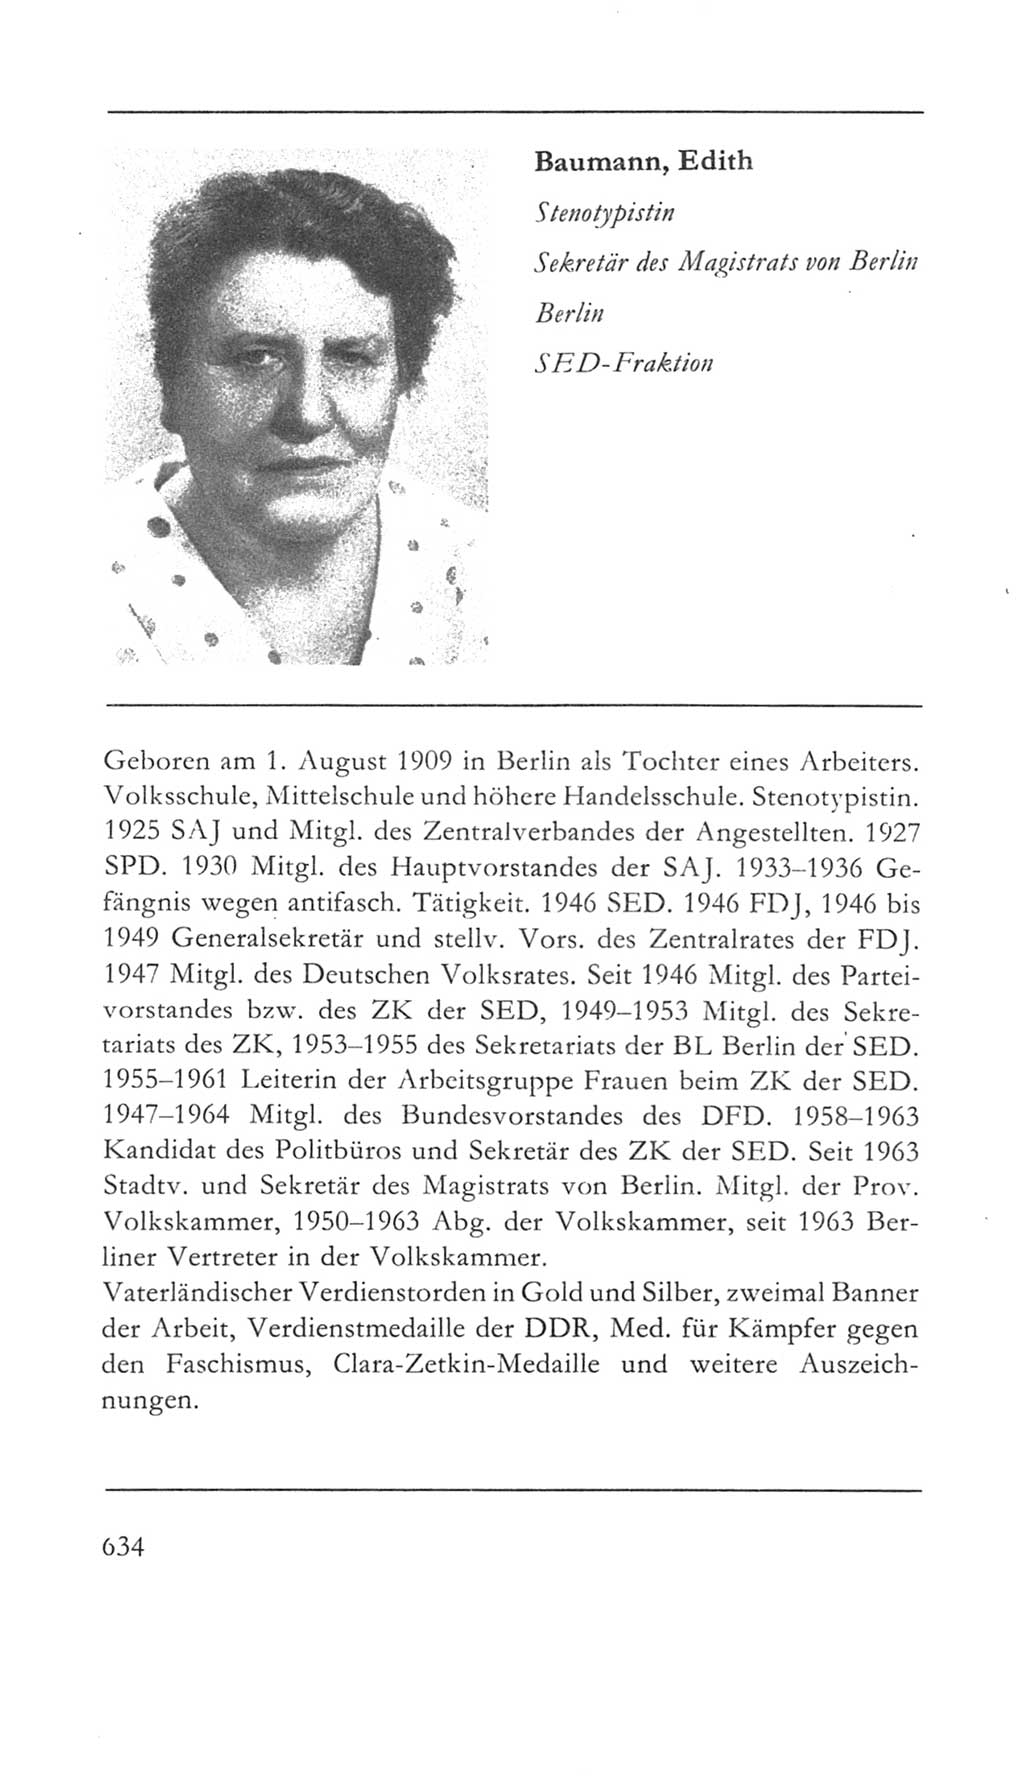 Volkskammer (VK) der Deutschen Demokratischen Republik (DDR) 5. Wahlperiode 1967-1971, Seite 634 (VK. DDR 5. WP. 1967-1971, S. 634)